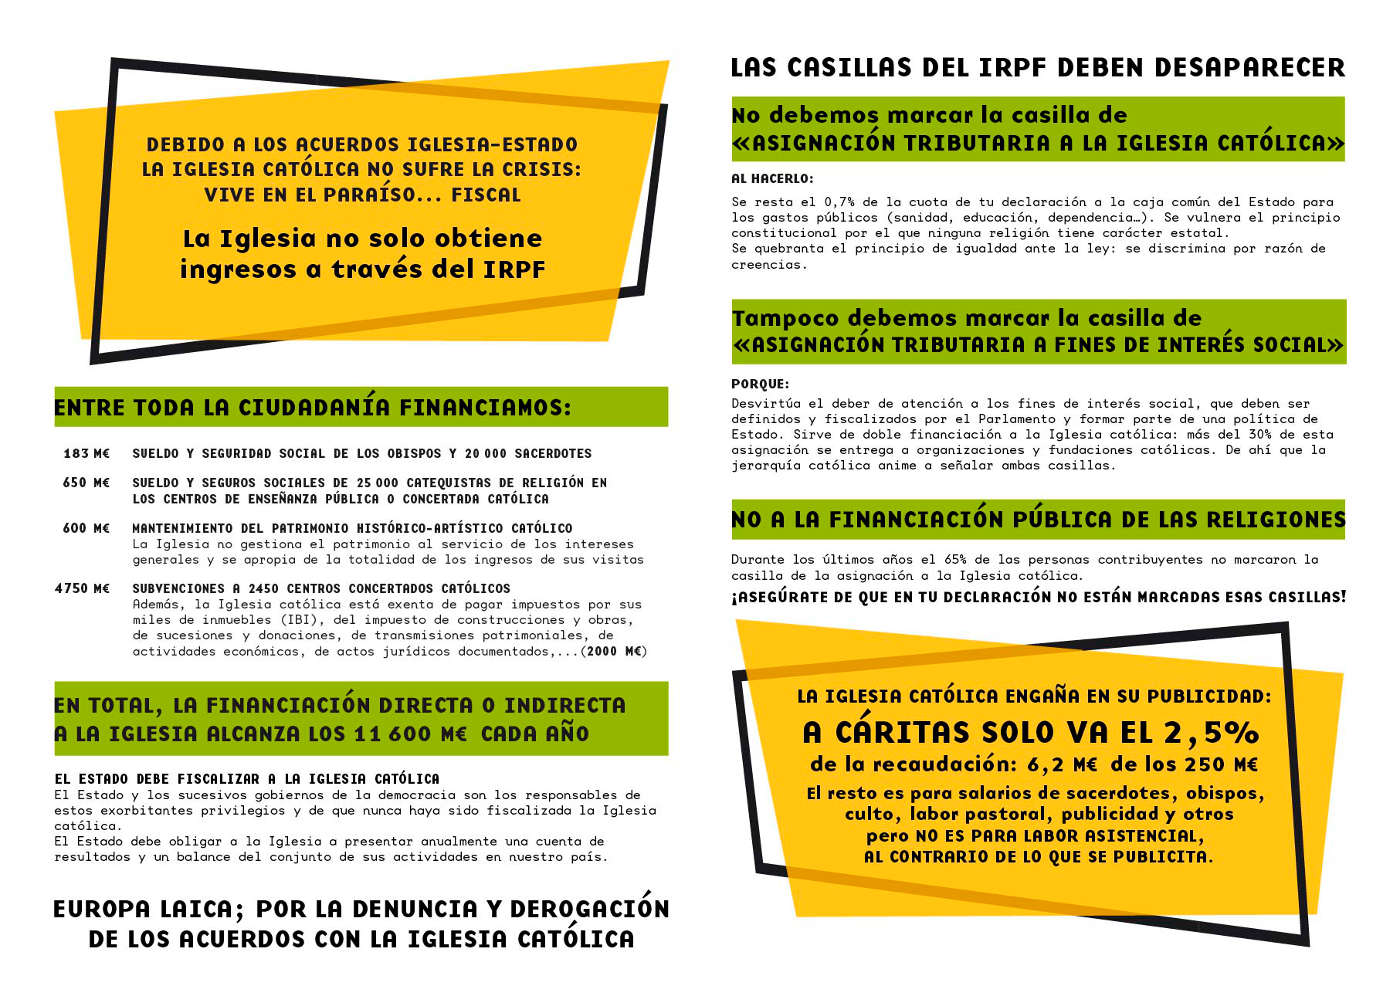 Imagen de la campaña de Europa Laica pidiendo que en la declaración de la renta no marquemos ninguna de las dos casillas que nos ofrece el impreso del IRPF.